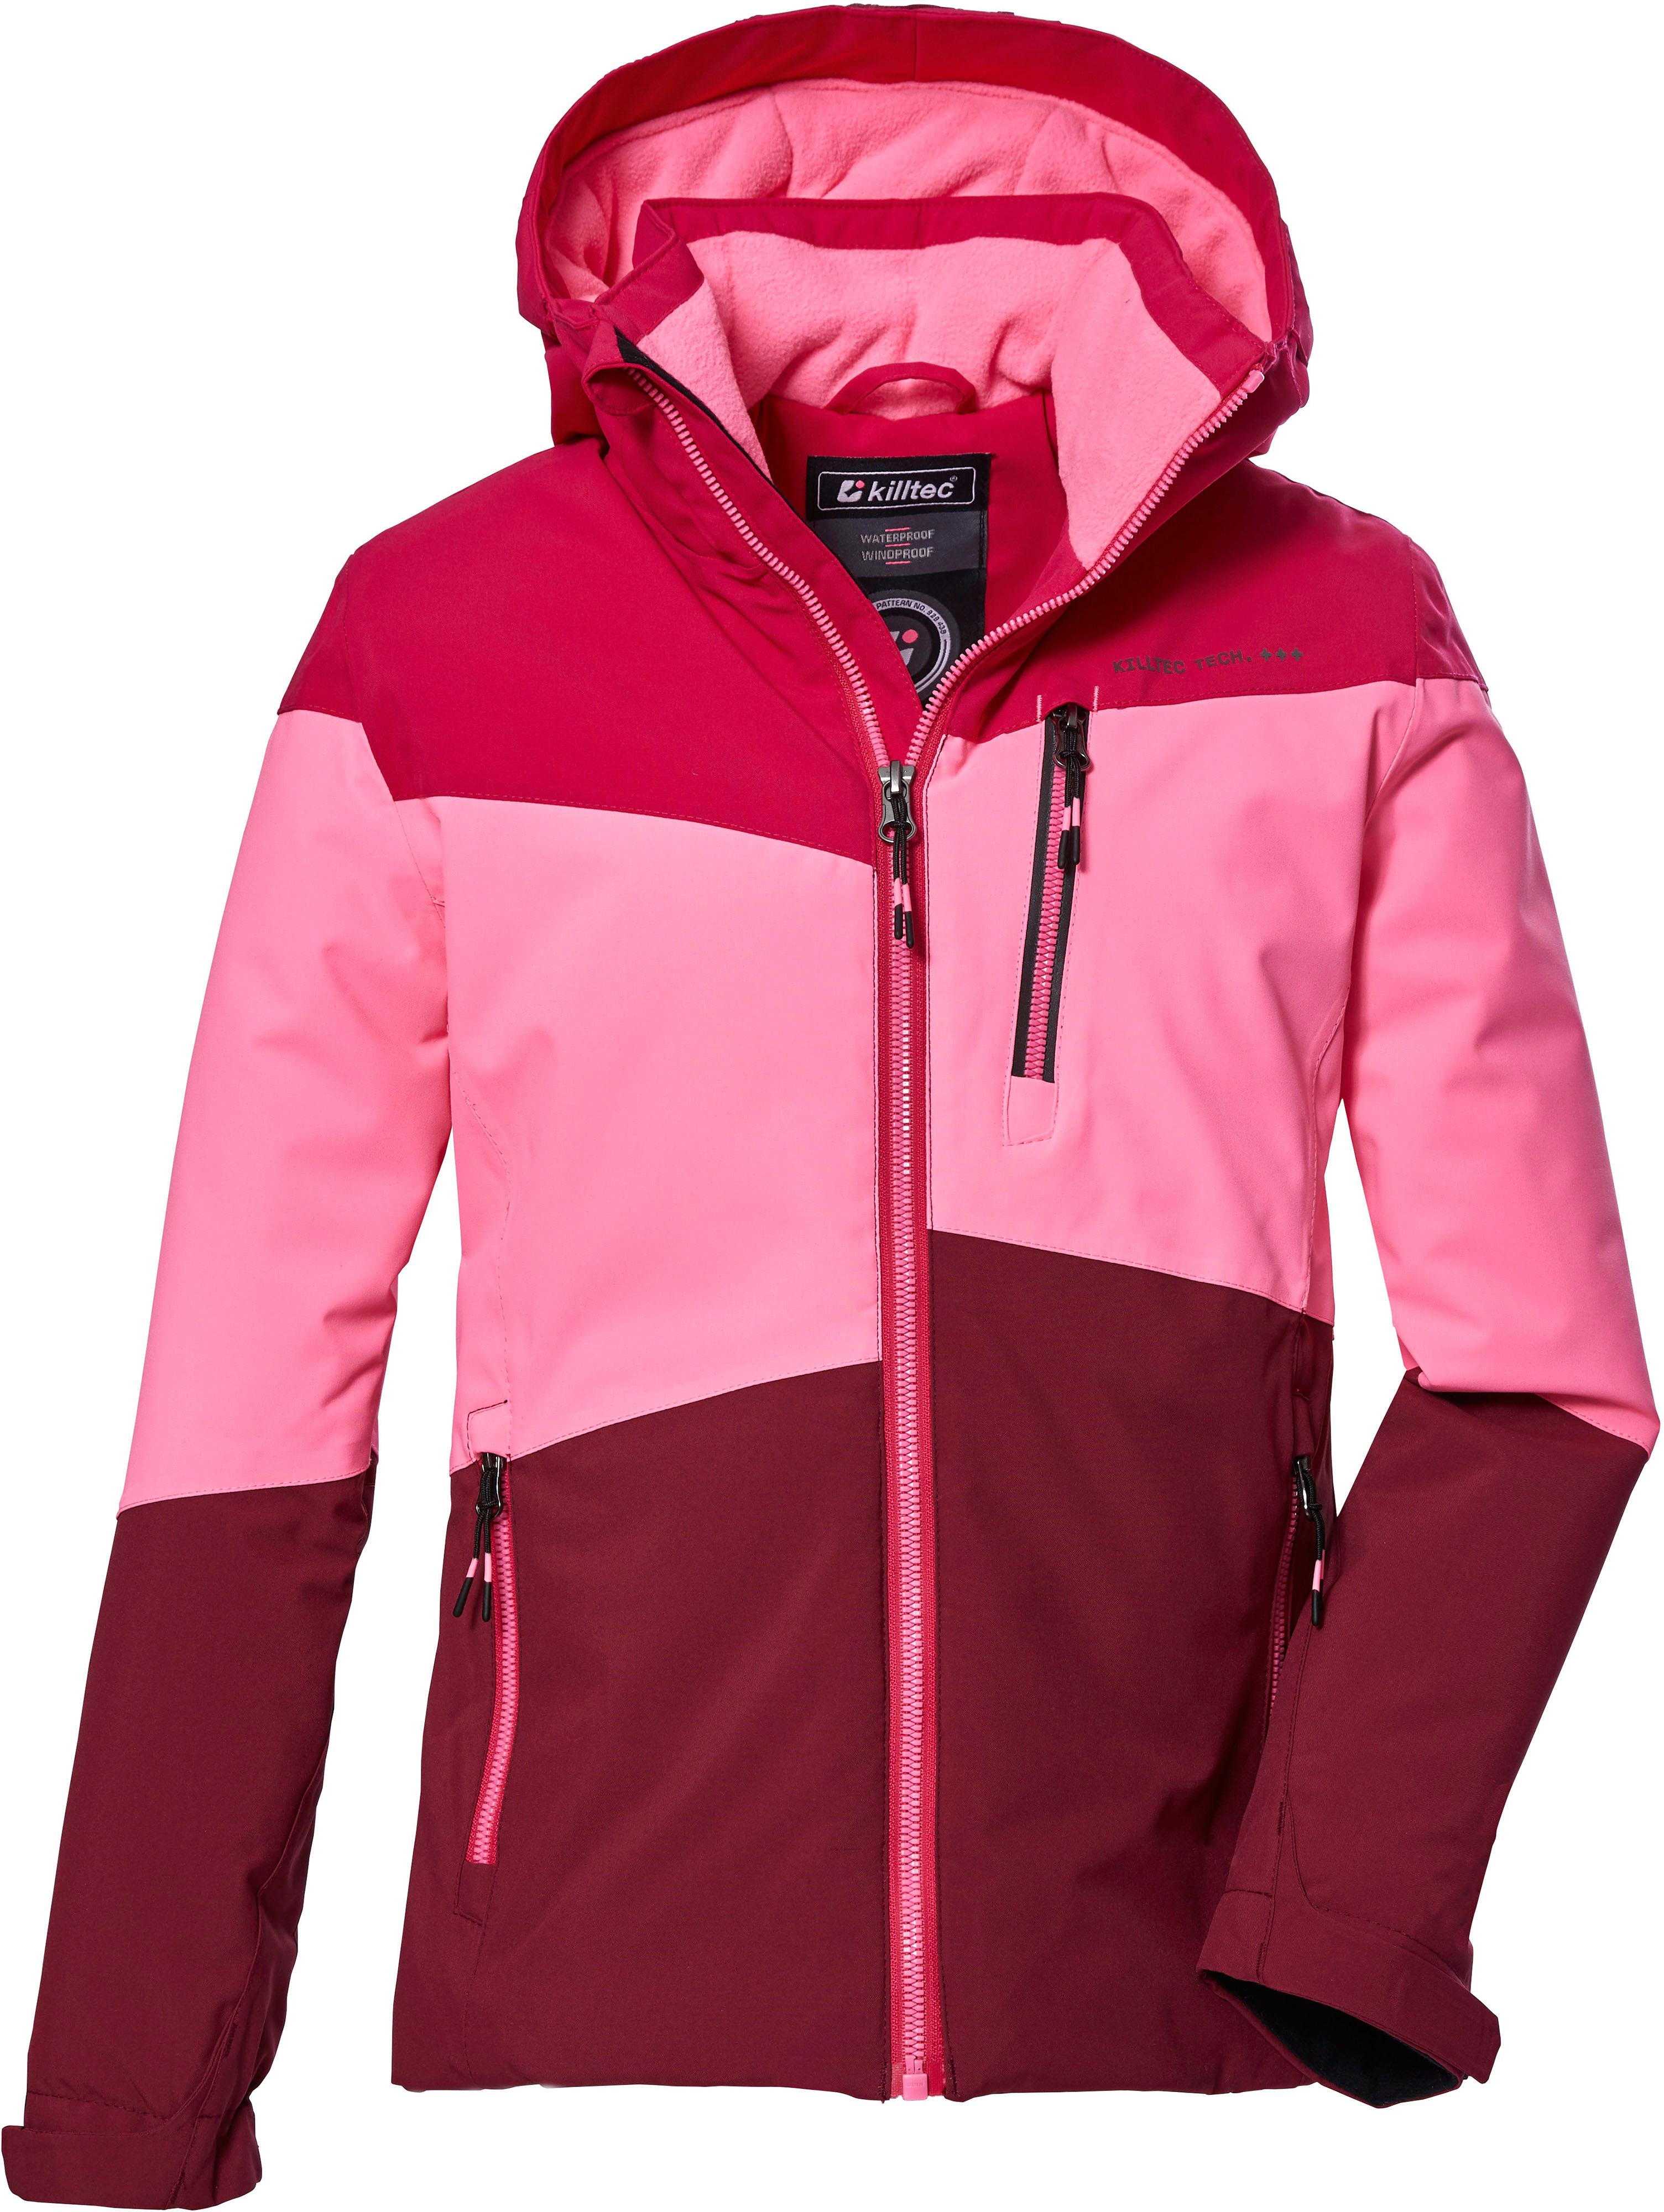 von KOW im Shop 170 Skijacke Mädchen KILLTEC pink SportScheck Online kaufen